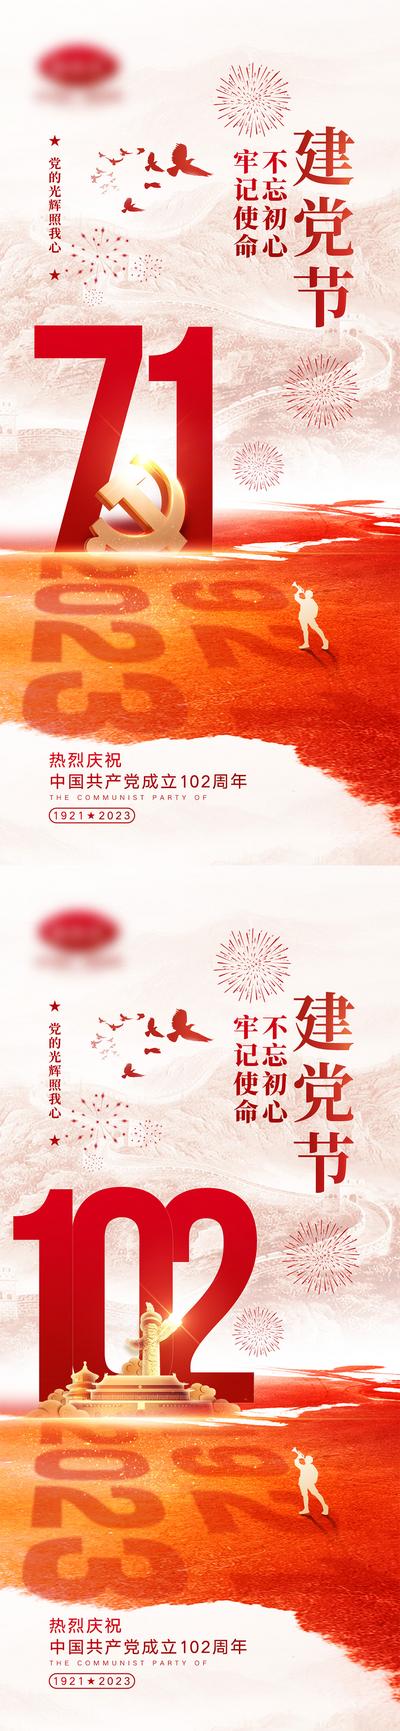 南门网 海报 公立节日 建党节 102周年 天安门 军人 系列